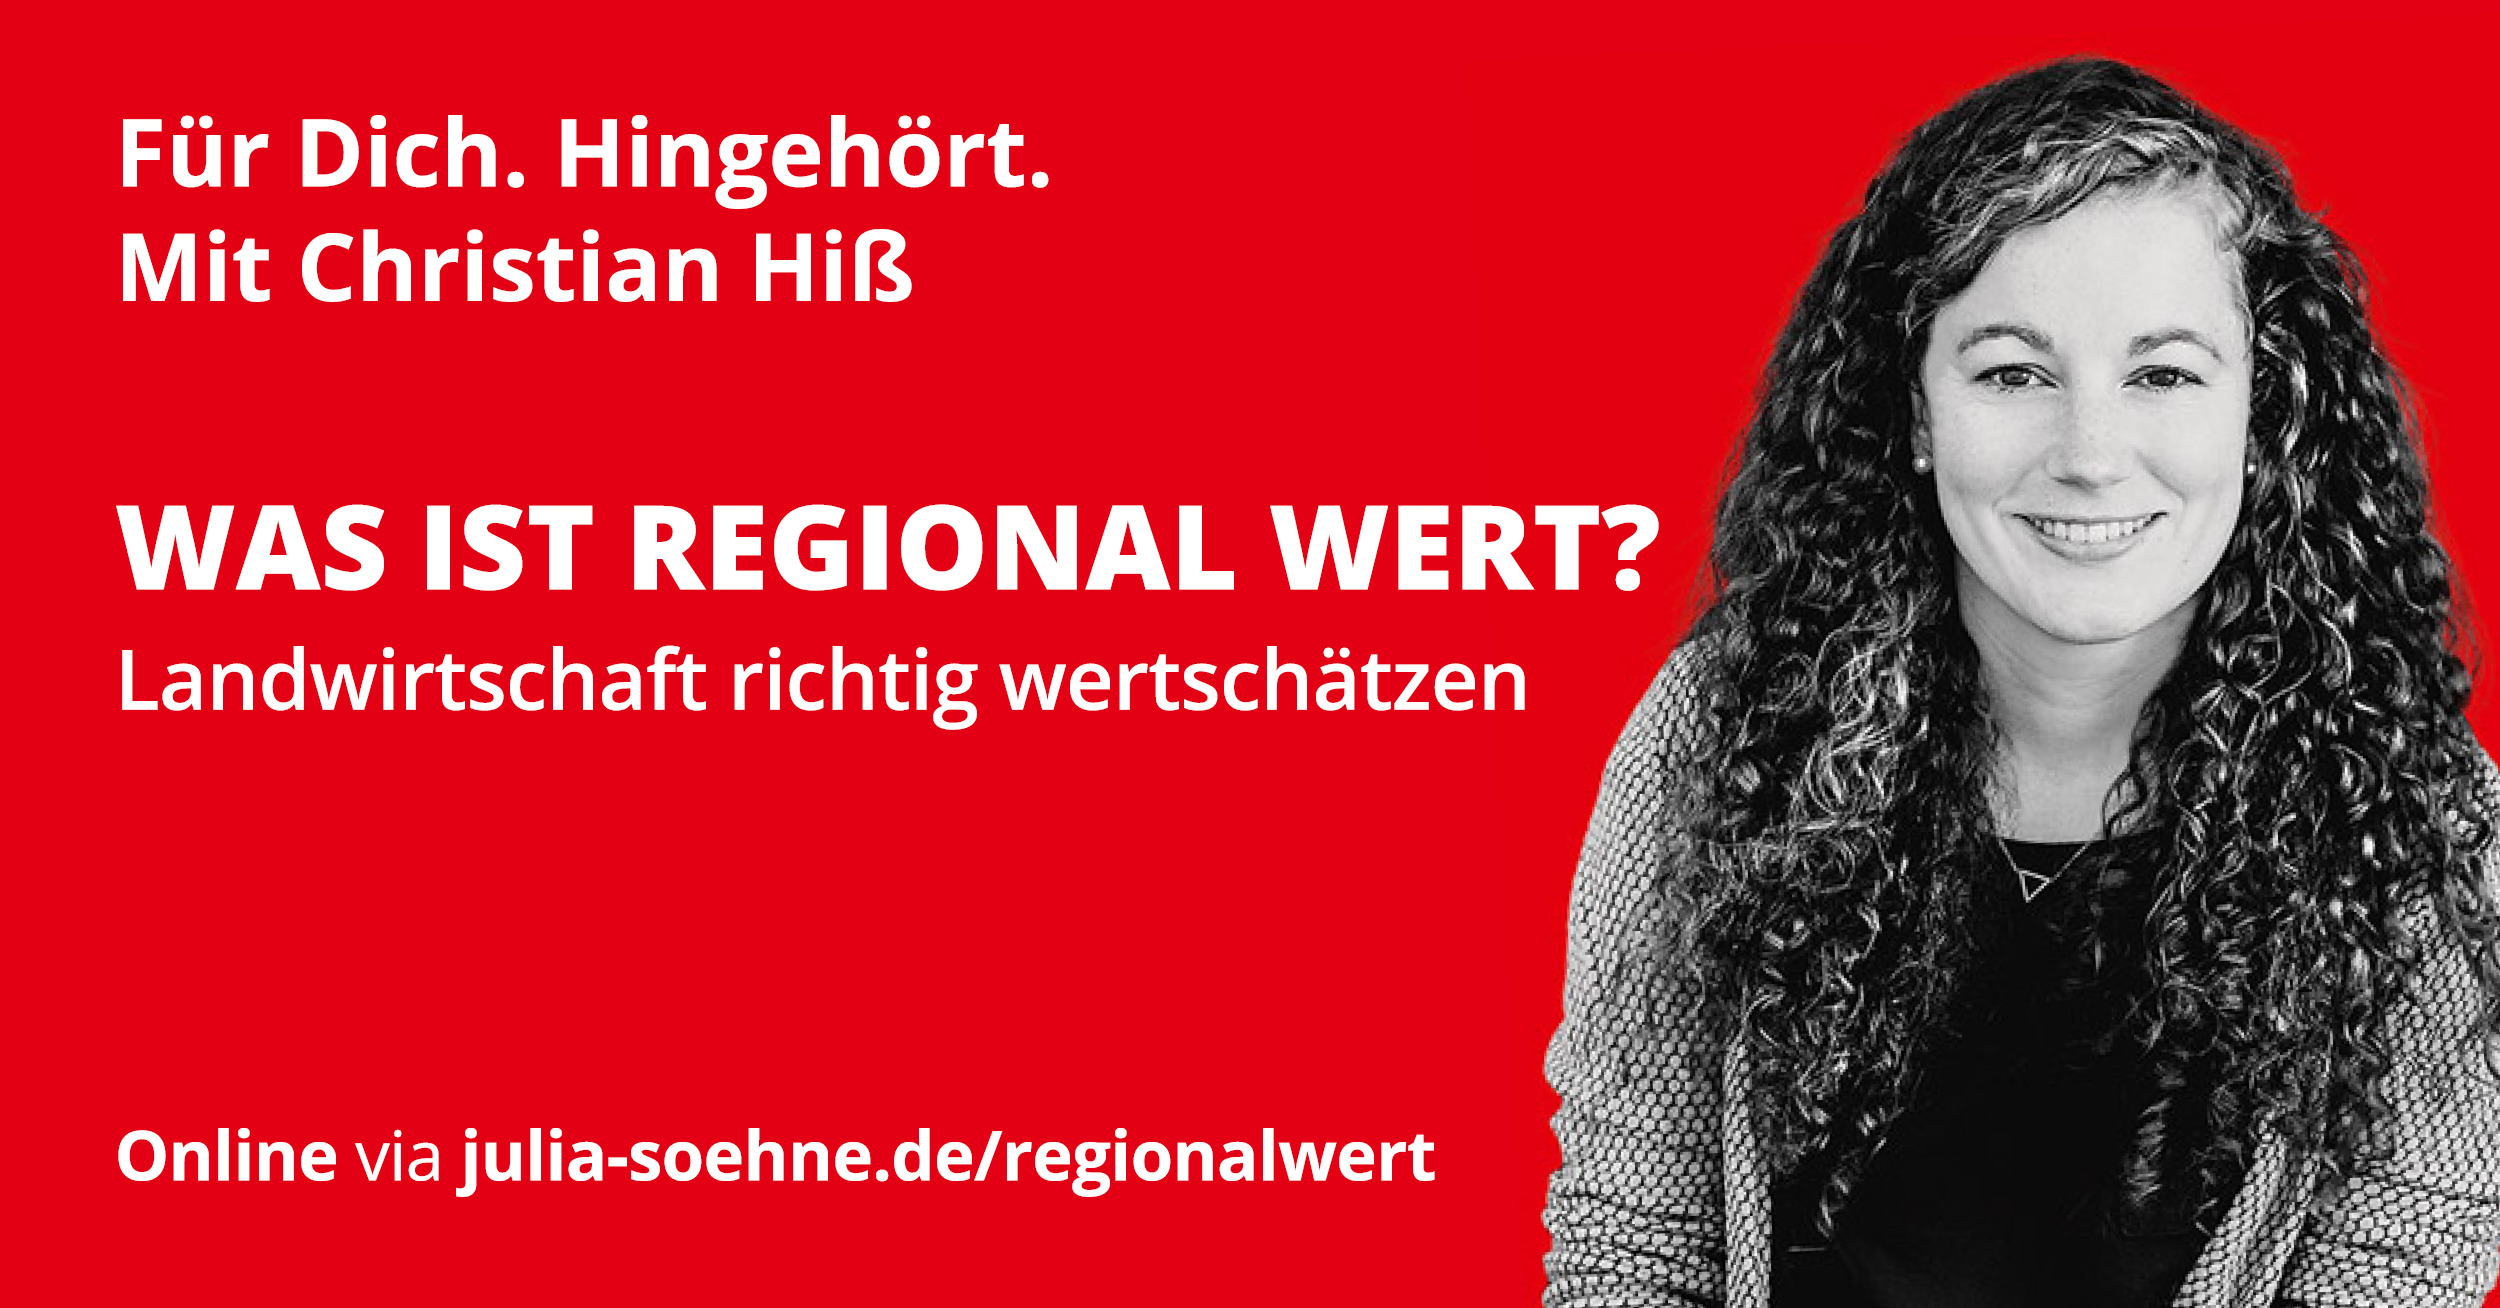 Veranstaltung "Was ist regiona wert?" mit Christian Hiß am 7. Juli 2021 online via Zoom